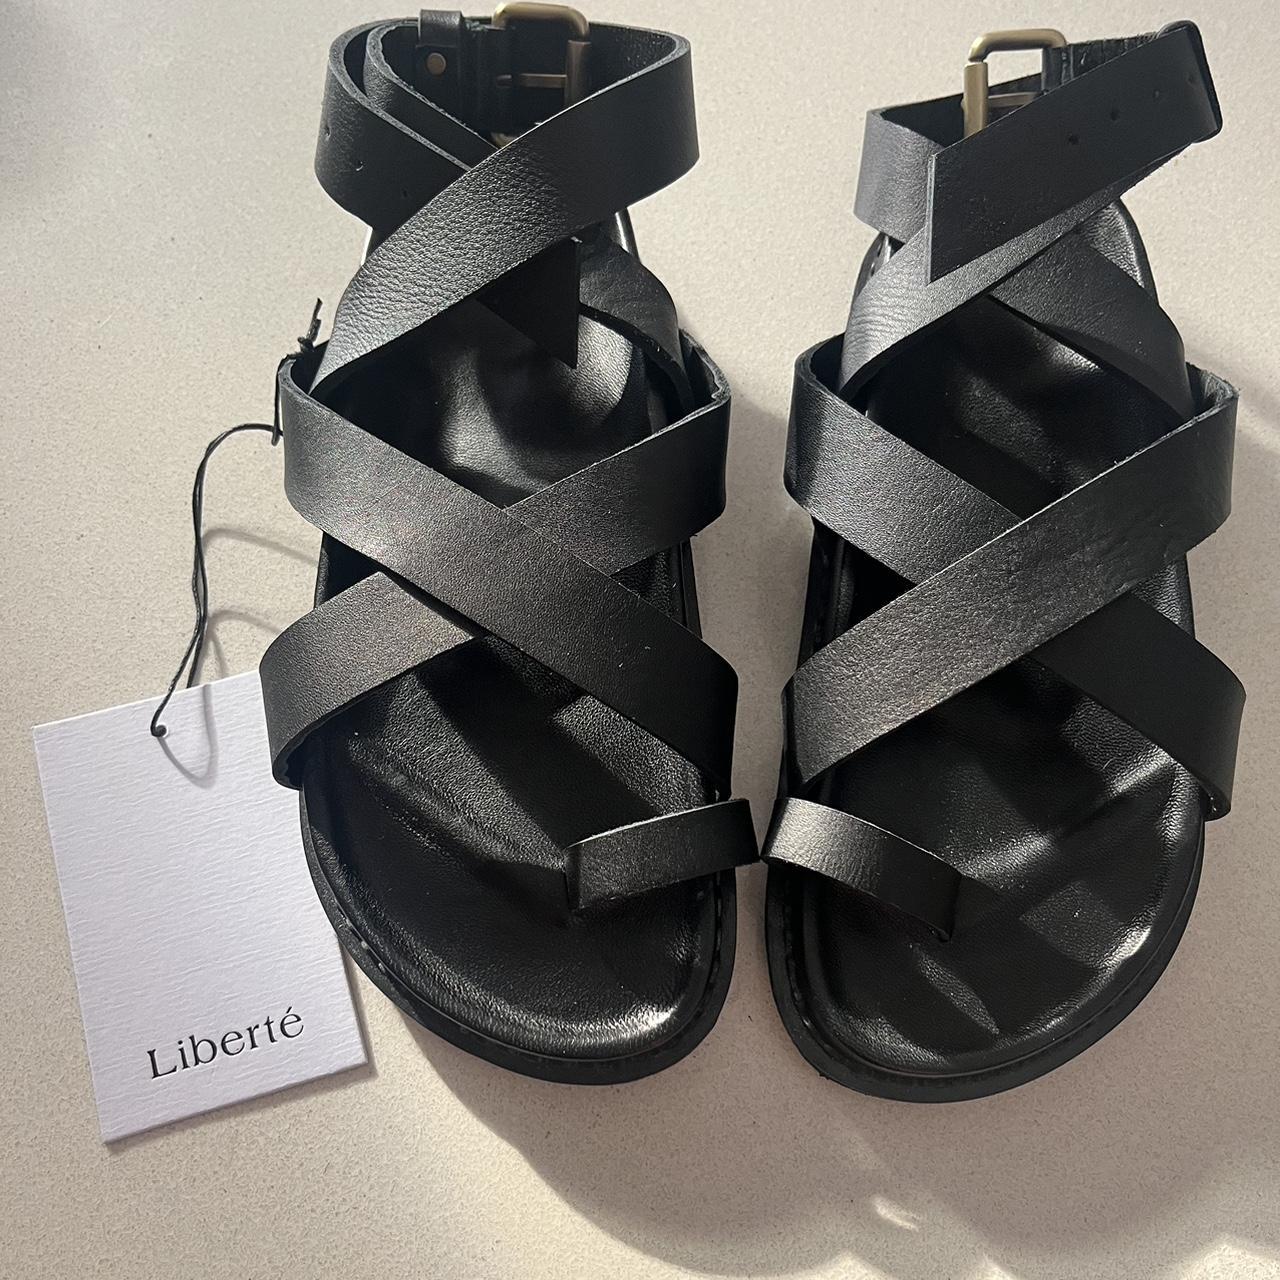 Liberte leather black Sandals Size 36 Paid... - Depop